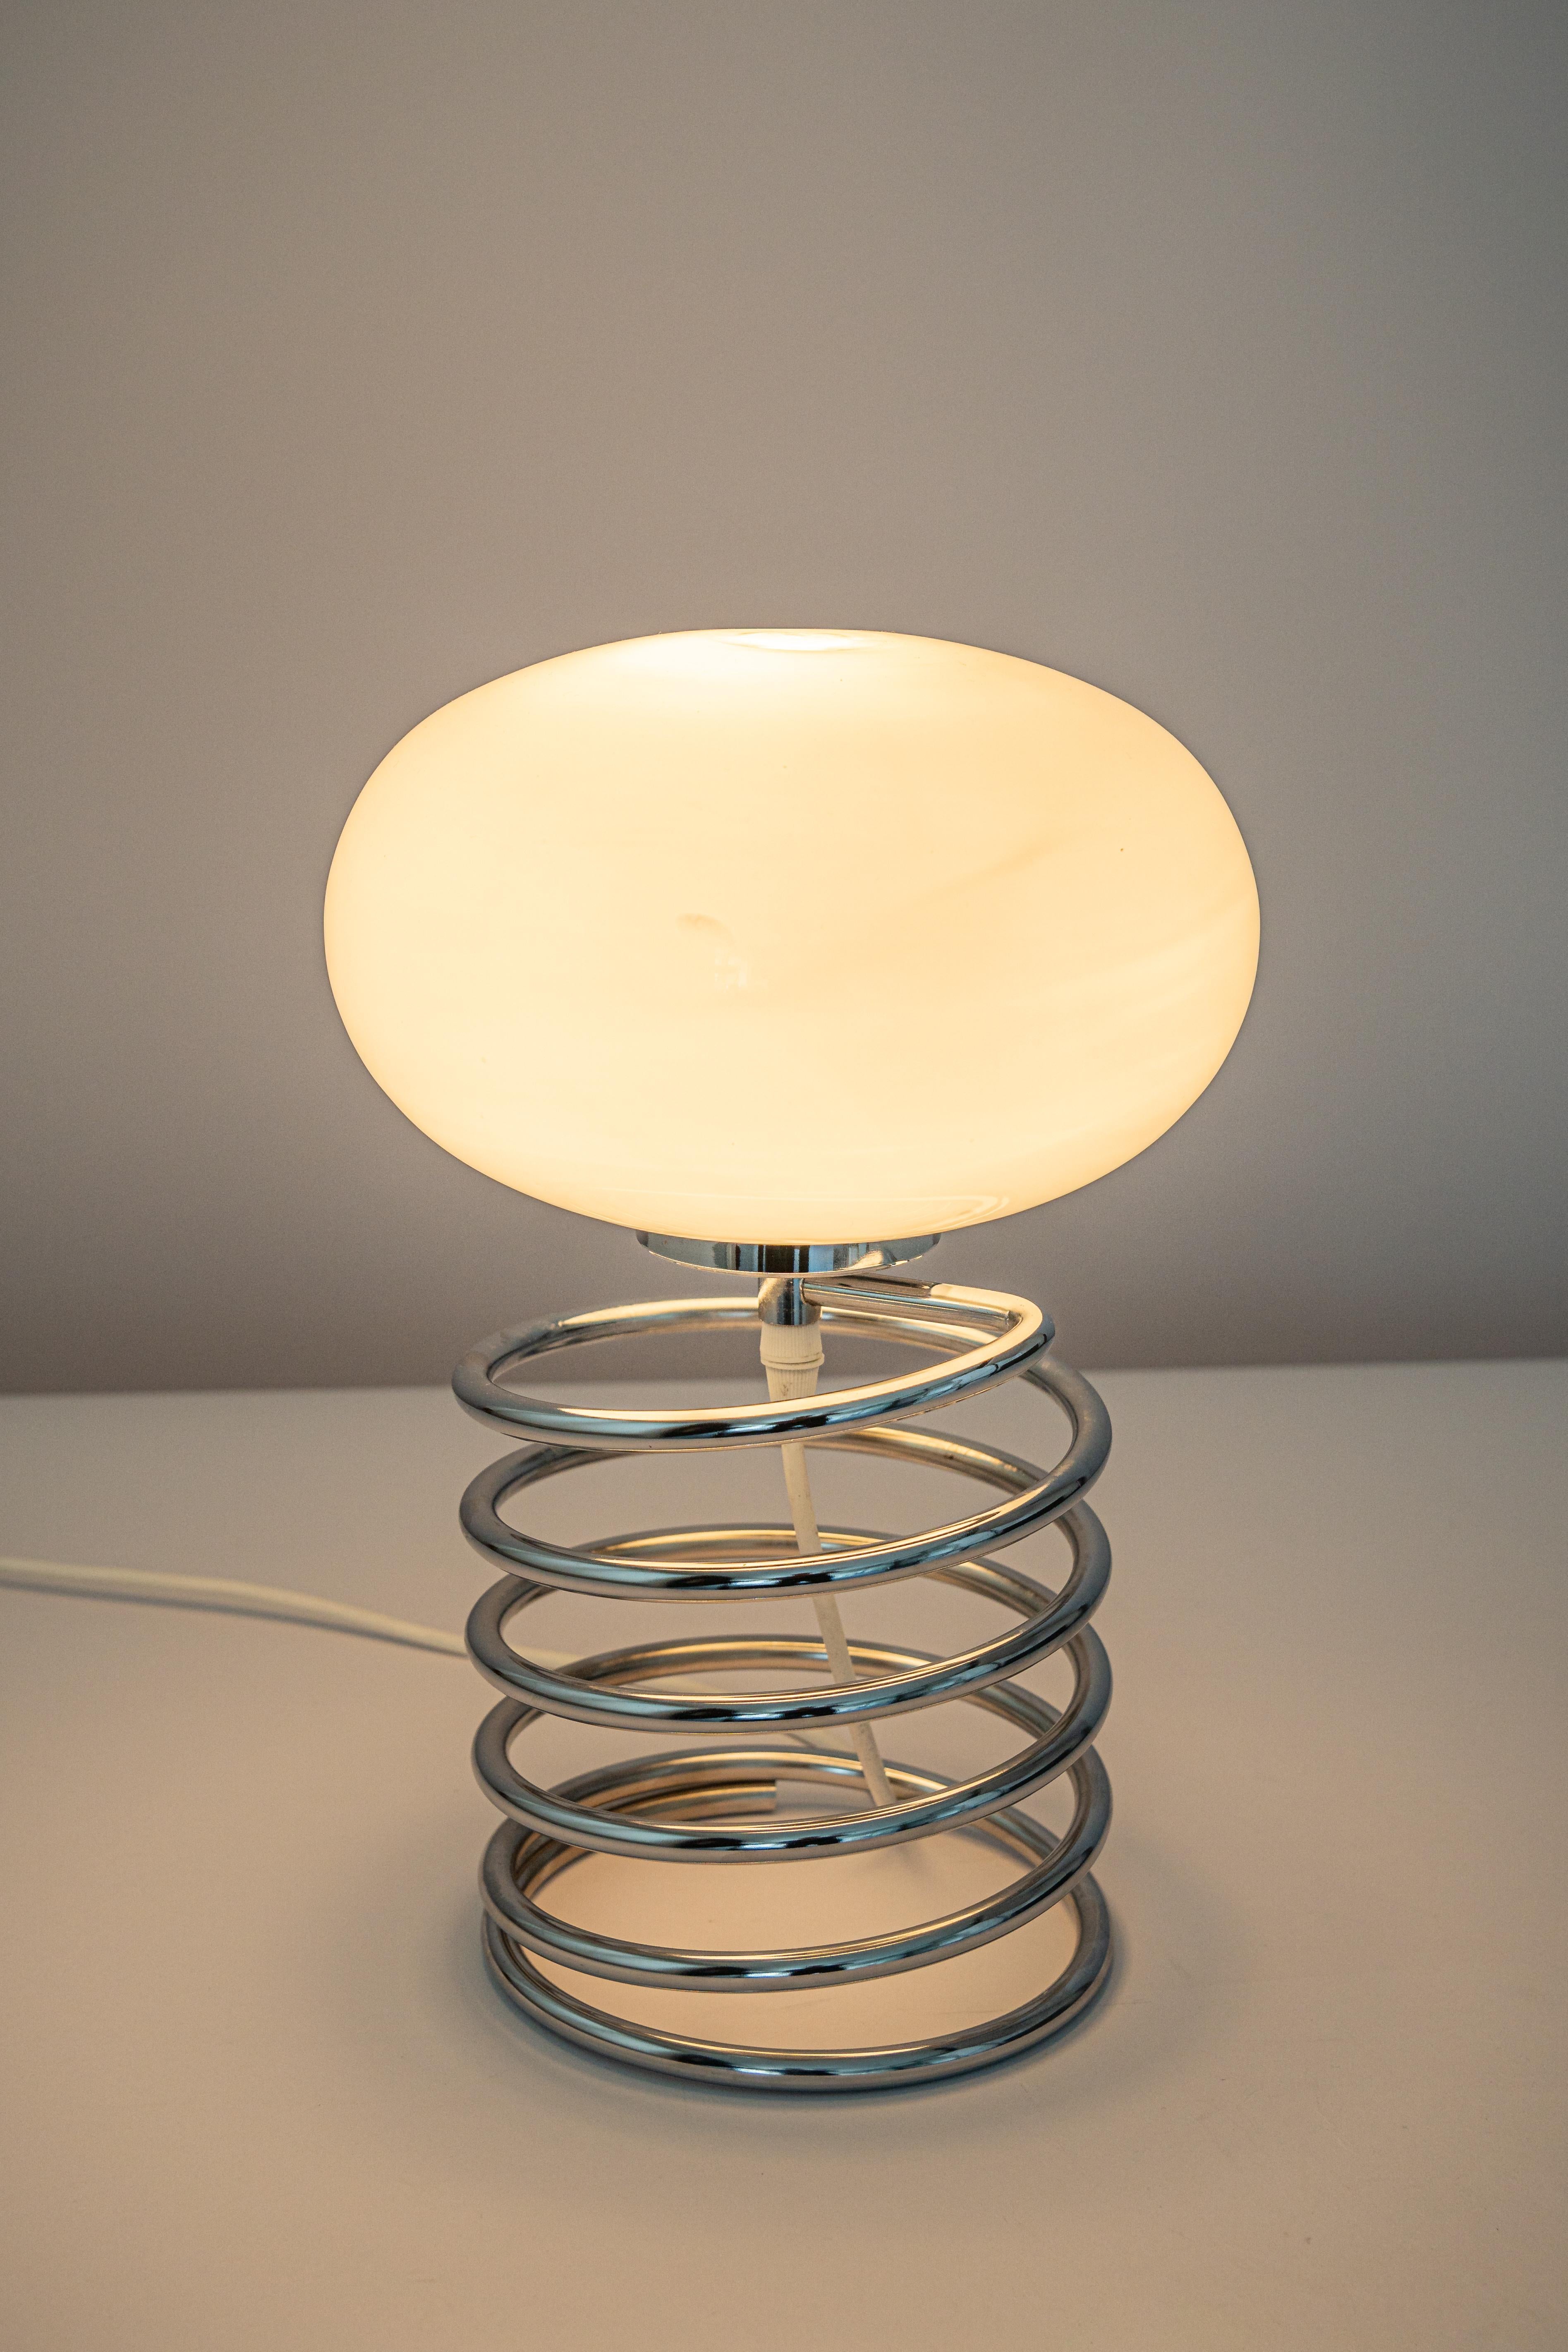 Stunning Petite Design Spiral Table Lamp, Ingo Maurer, 1970s 2